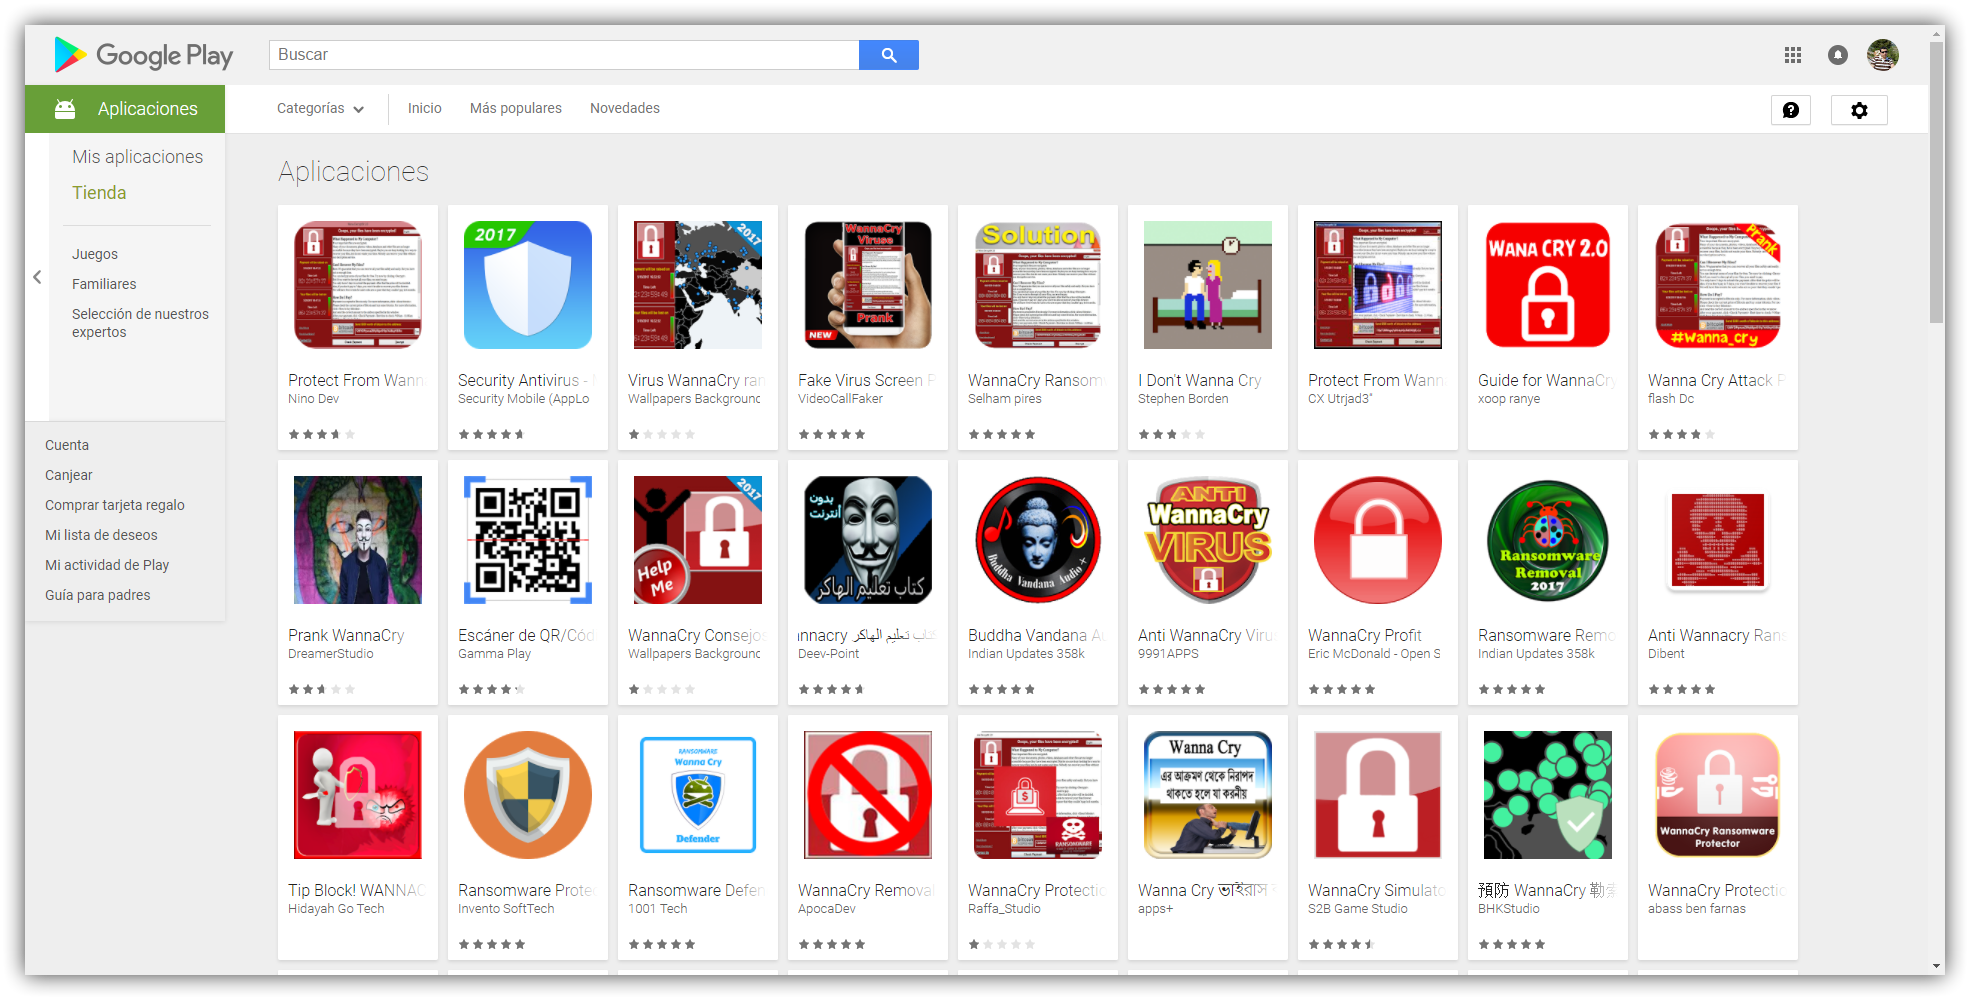 Apps basura WannaCry Play Store Android